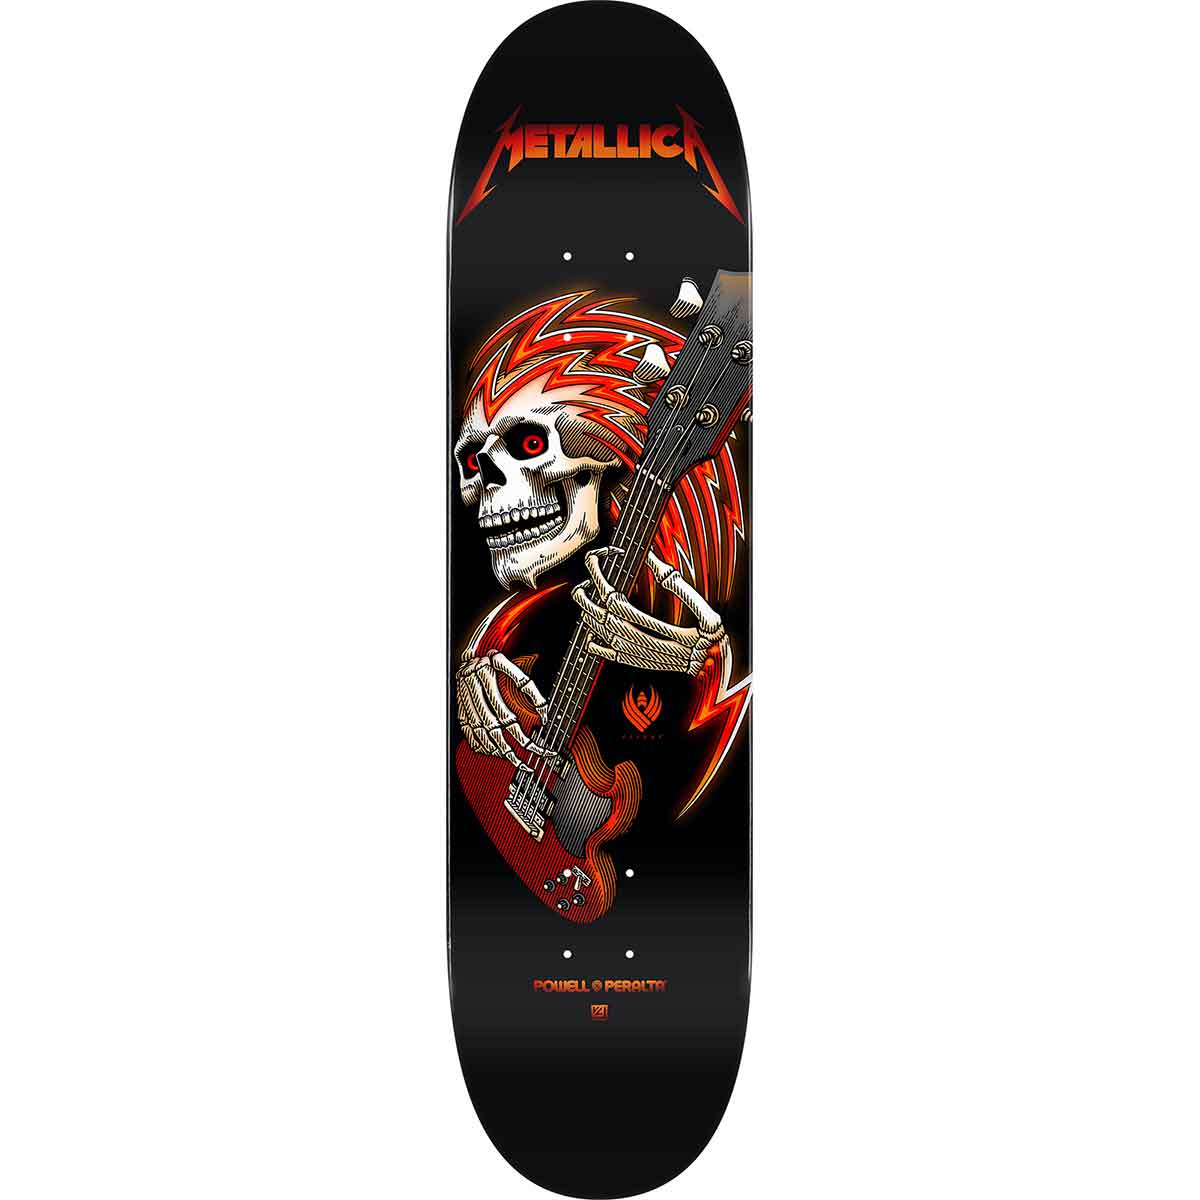 Verstikkend Gemarkeerd beton Powell Peralta Metallica Collab Flight 243 Skateboard Deck - Black  8.25x31.95 | SoCal Skateshop